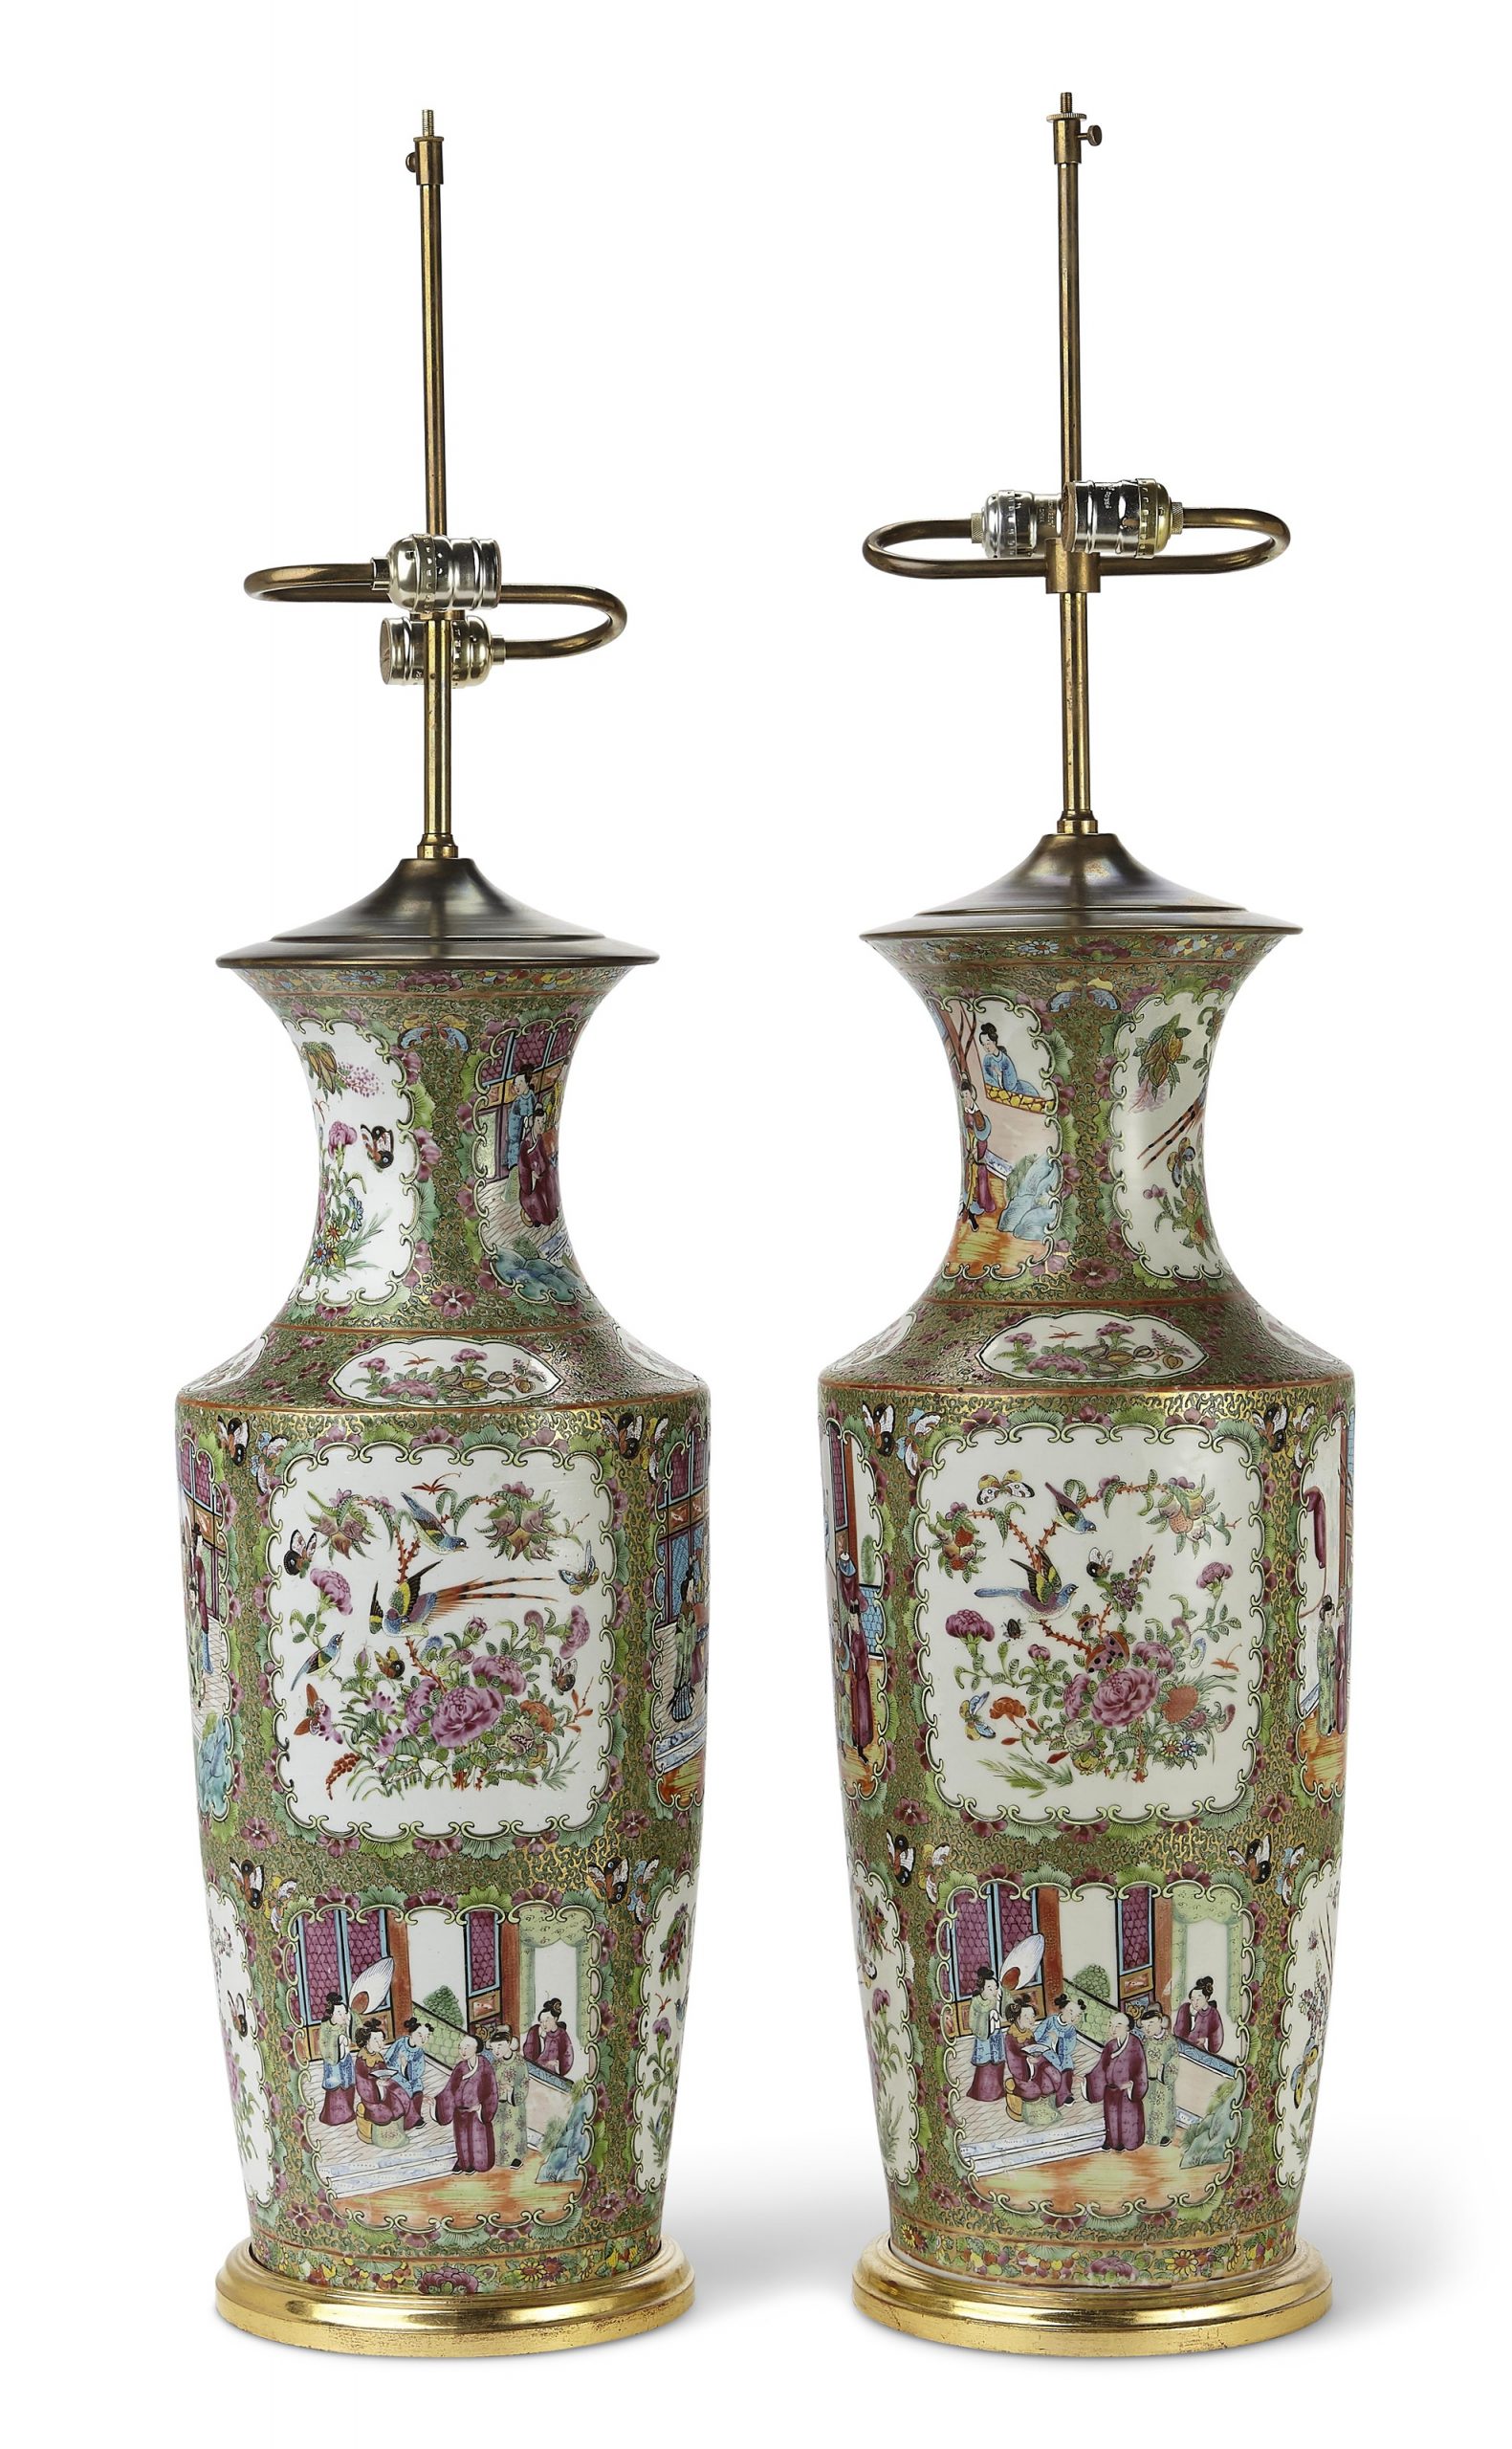 私人收藏品，凯米勒藏品
一对中国外销“广彩”大花瓶，改装为台灯
19世纪